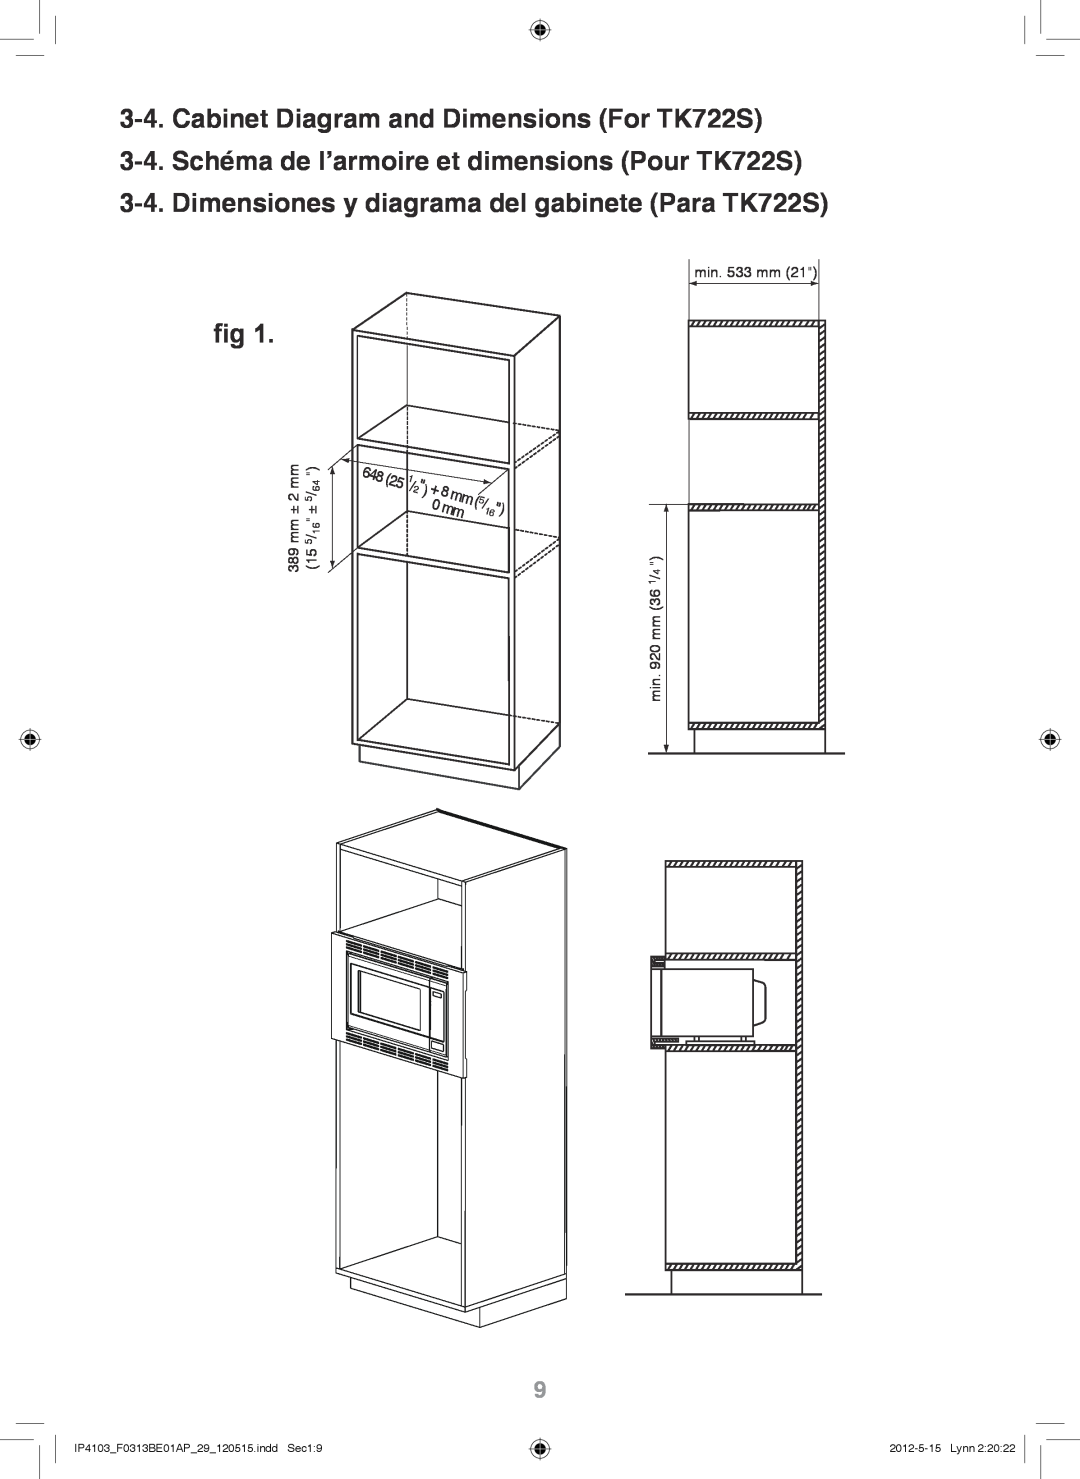 Panasonic NN-TK922S Cabinet Diagram and Dimensions For TK722S, 3-4.Schéma de l’armoire et dimensions Pour TK722S 